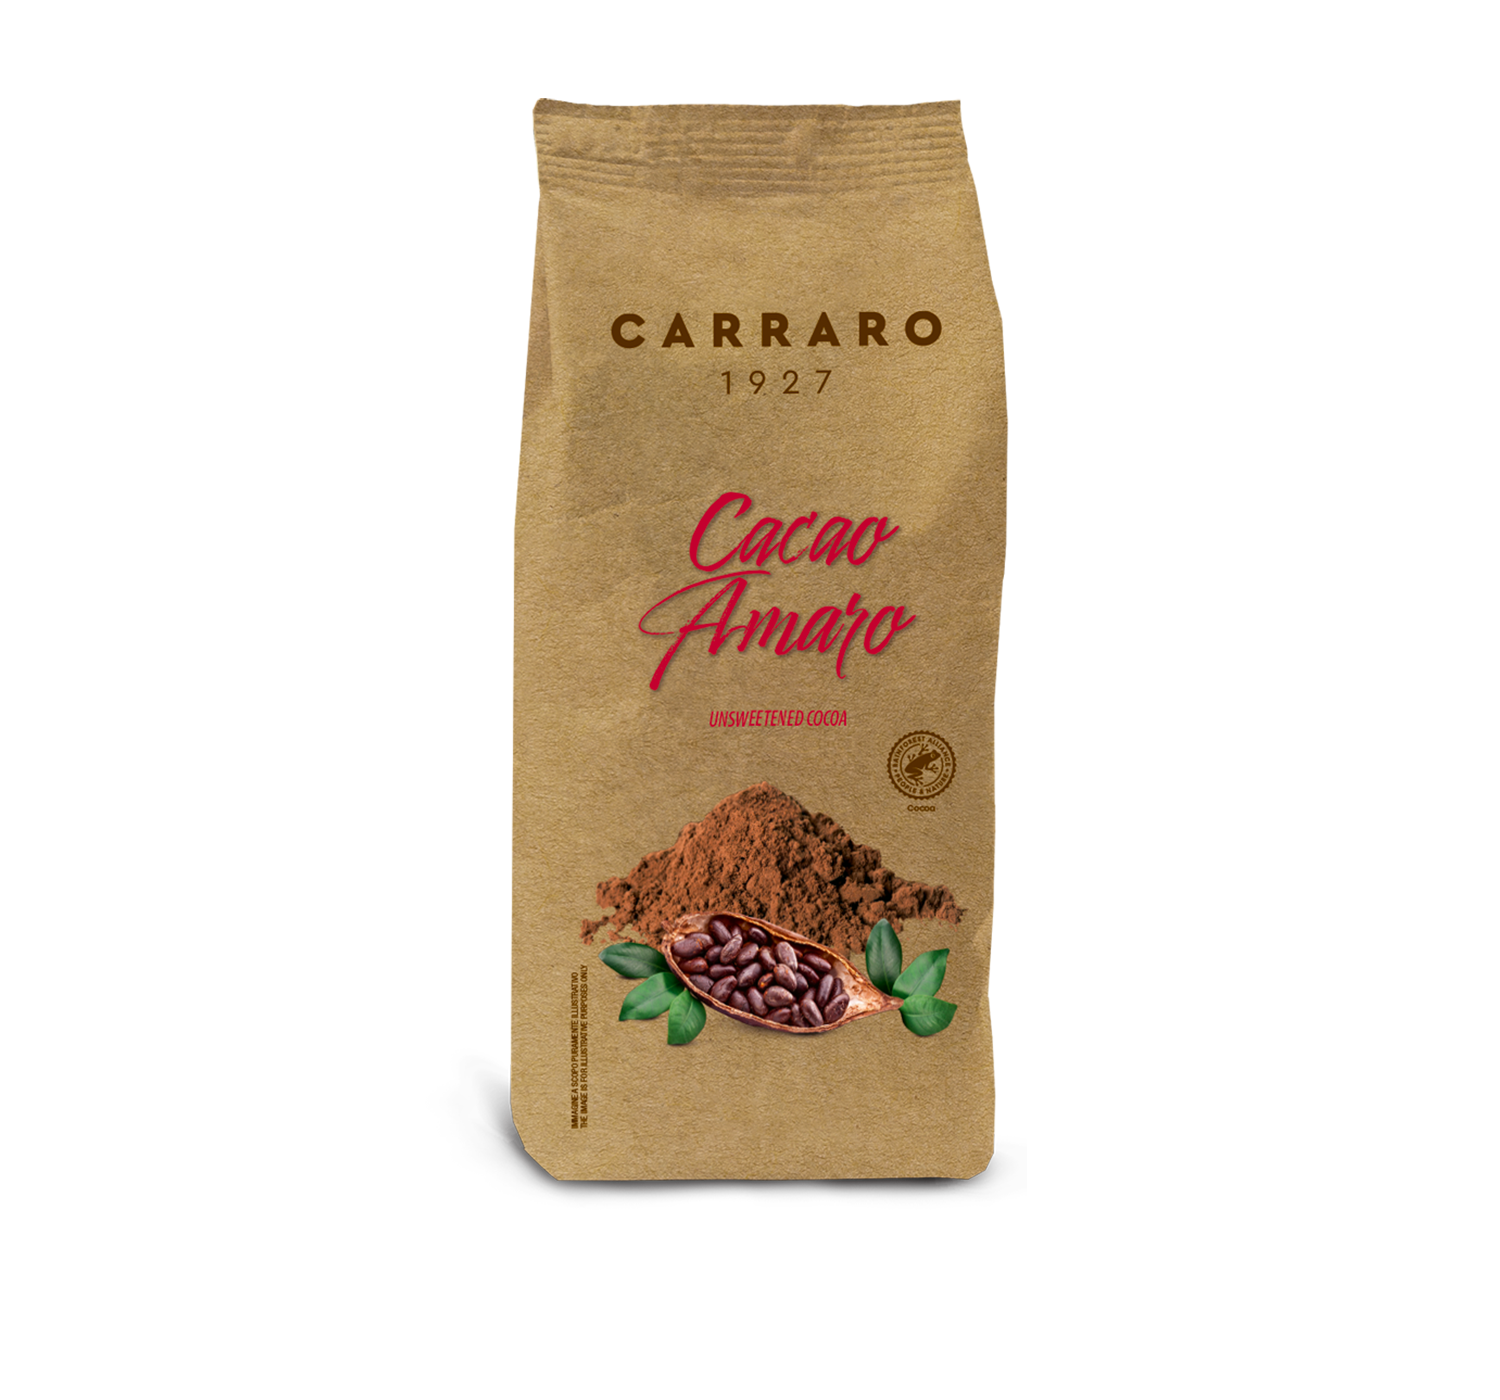 Cacao - Cacao amaro – 500 g - Shop online Caffè Carraro